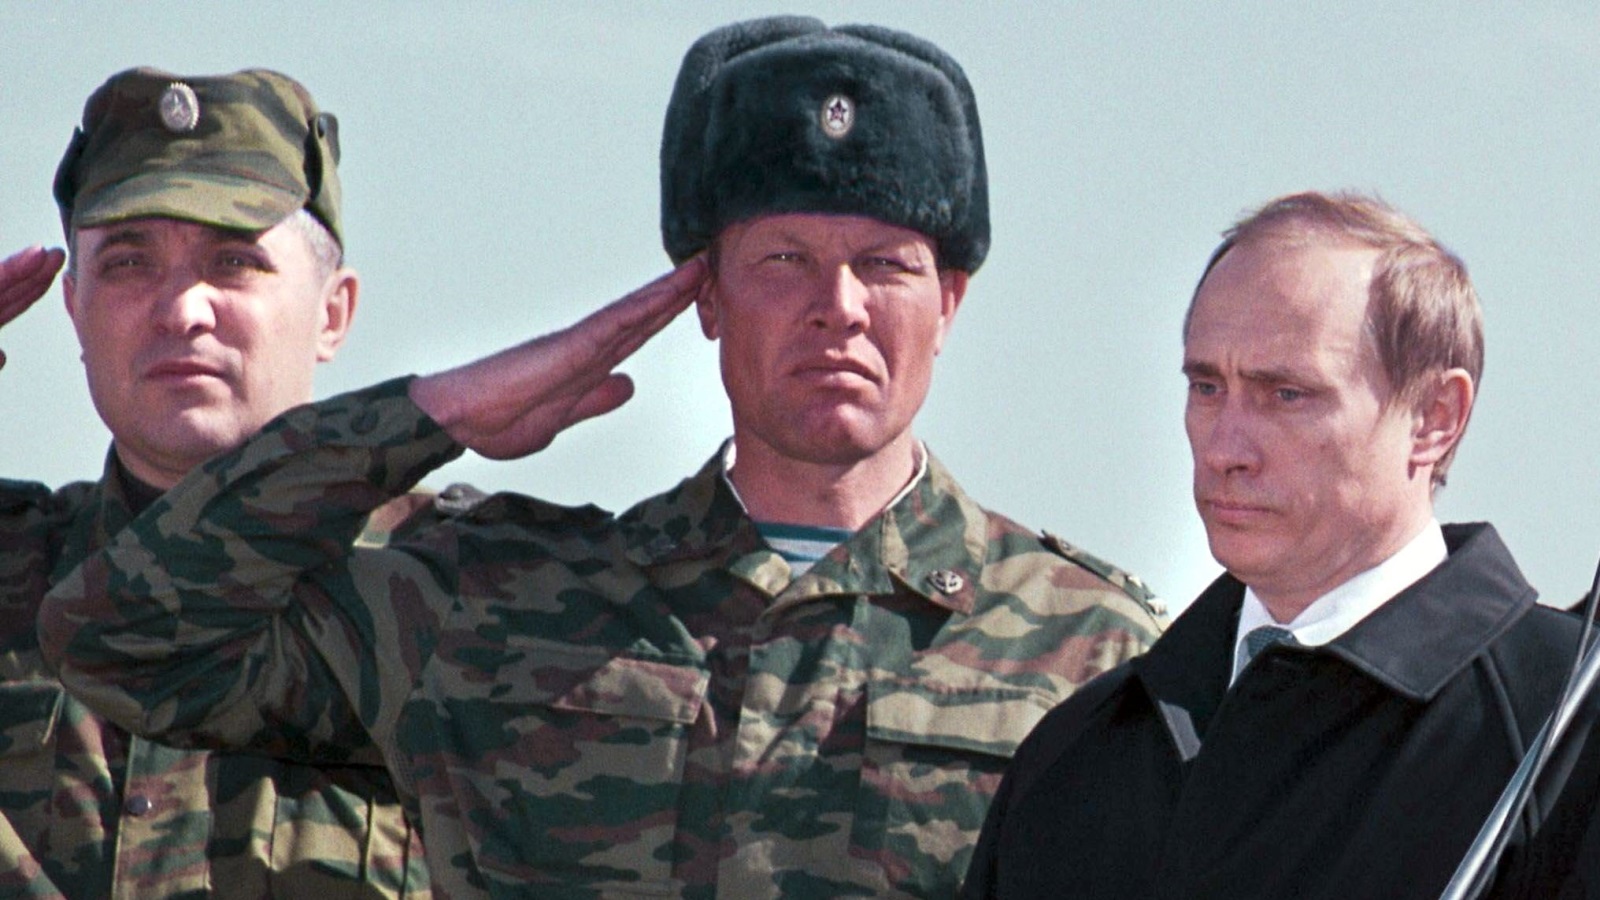 بوتين قاد الحرب الشيشانية الثانية التي أريد لها أن تكون انتقاما لهزيمة الروس المذلة خلال حرب الشيشان الأولى (الأوروبية)